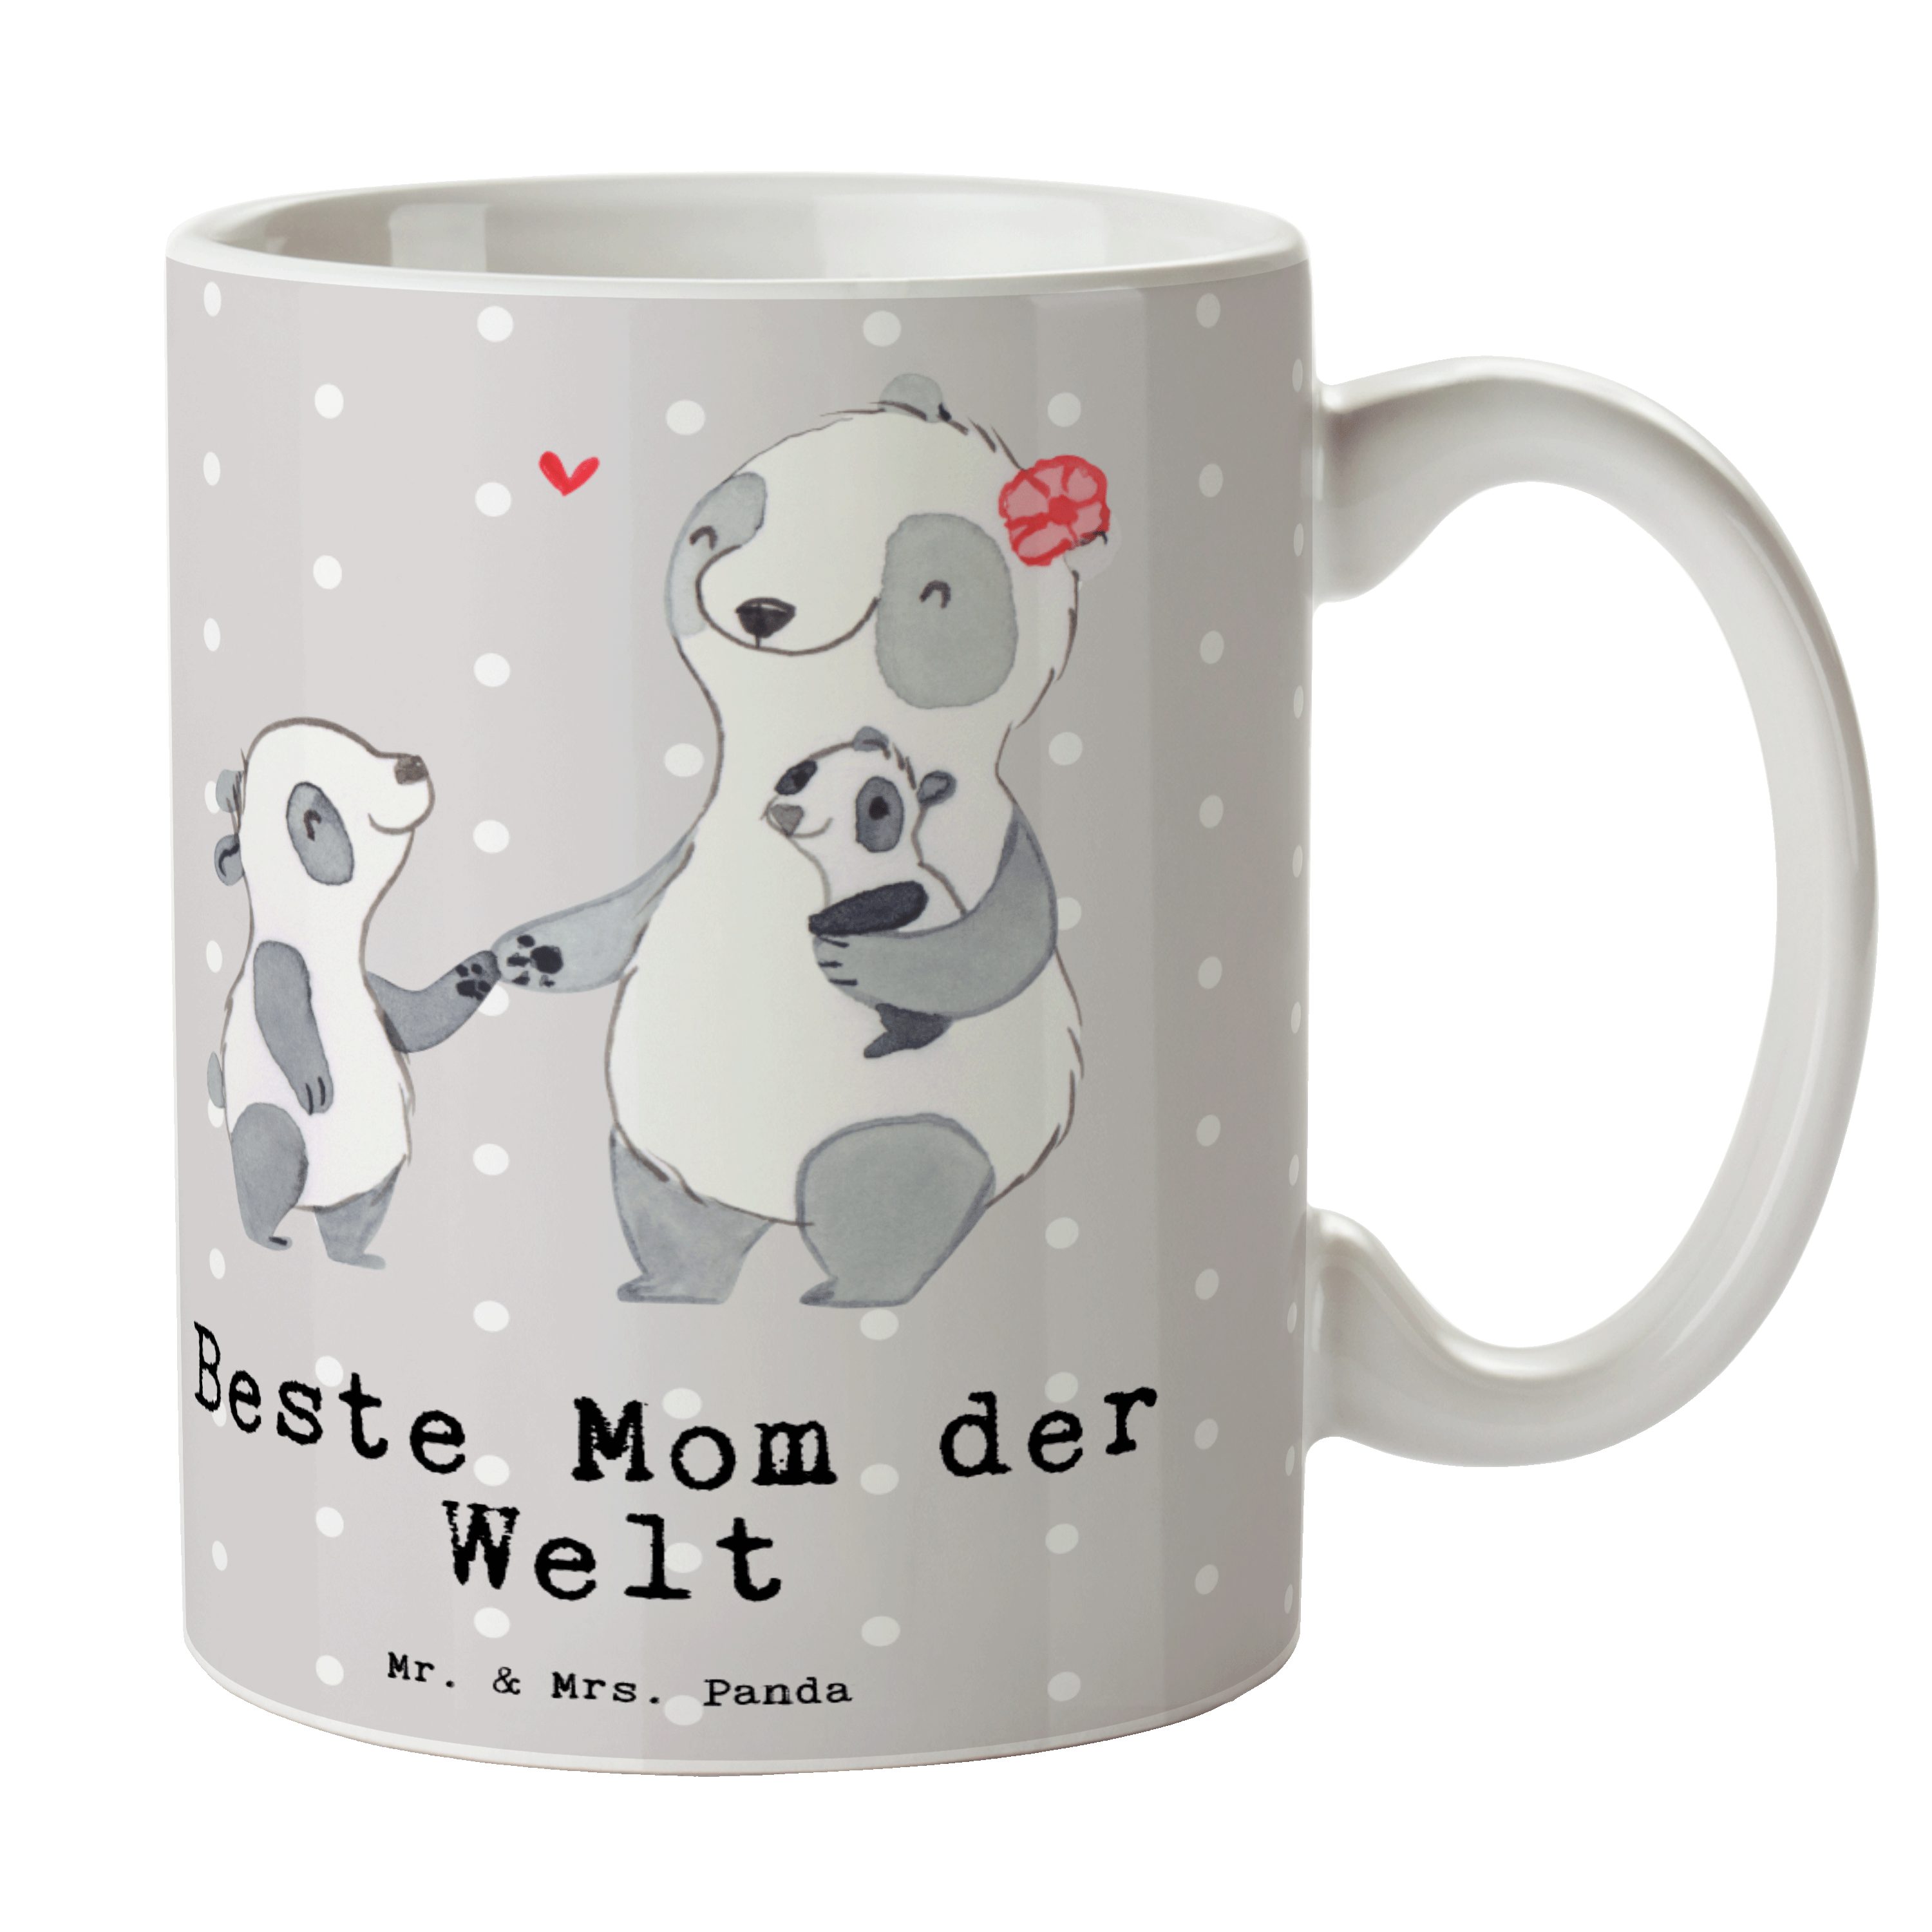 Mr. & Mrs. Panda Tasse Panda Beste Mom der Welt - Grau Pastell - Geschenk, Tee, Beste Mama, Keramik